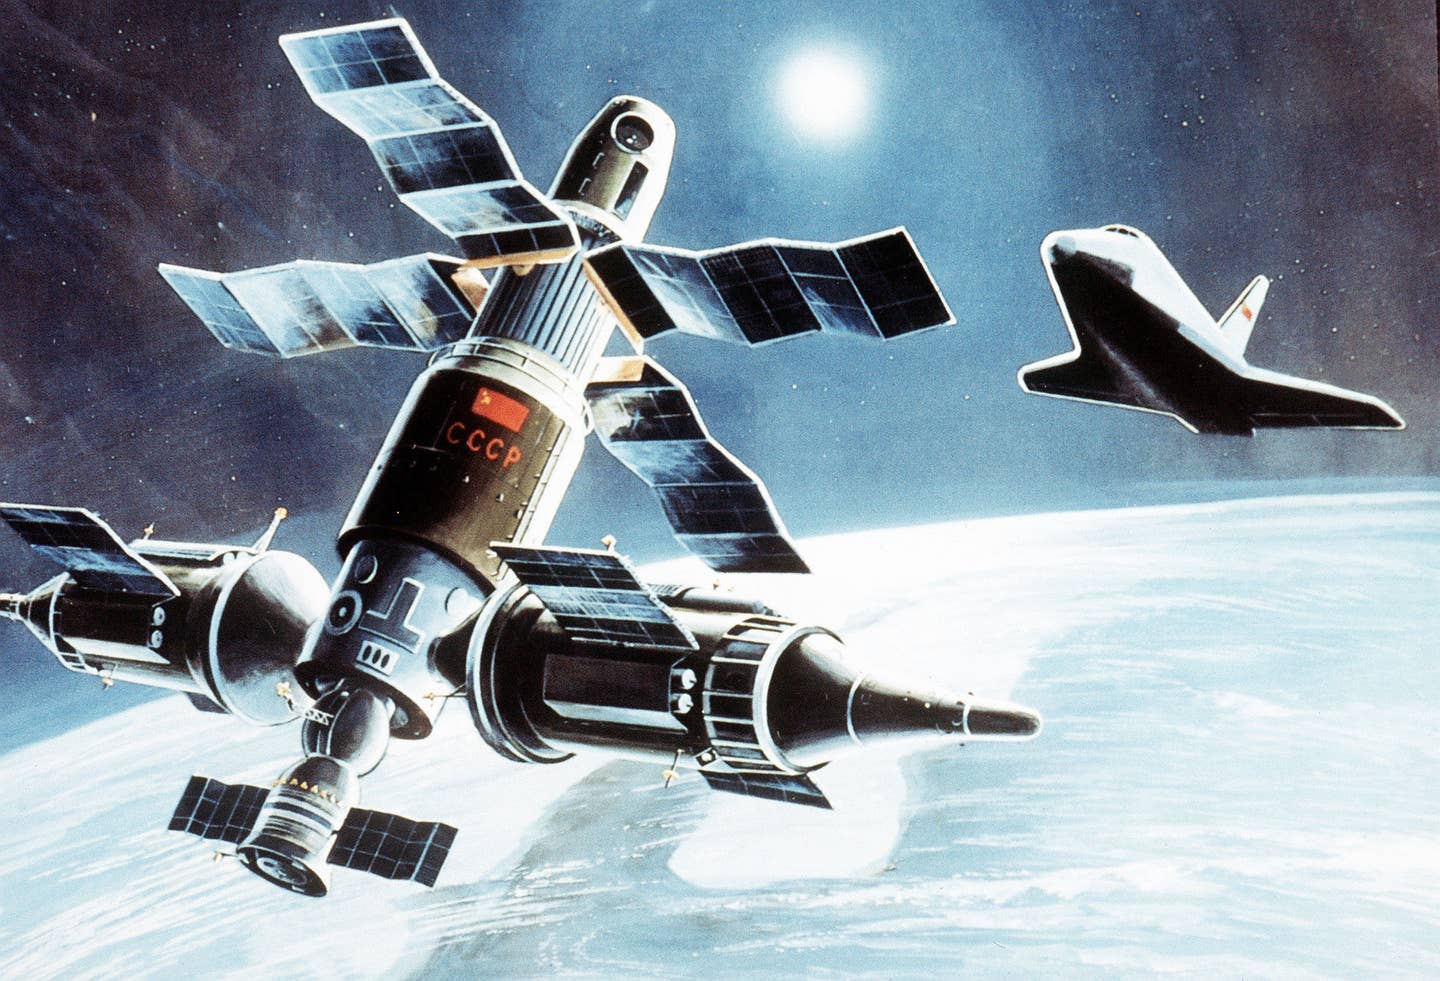 CCCP space shuttle